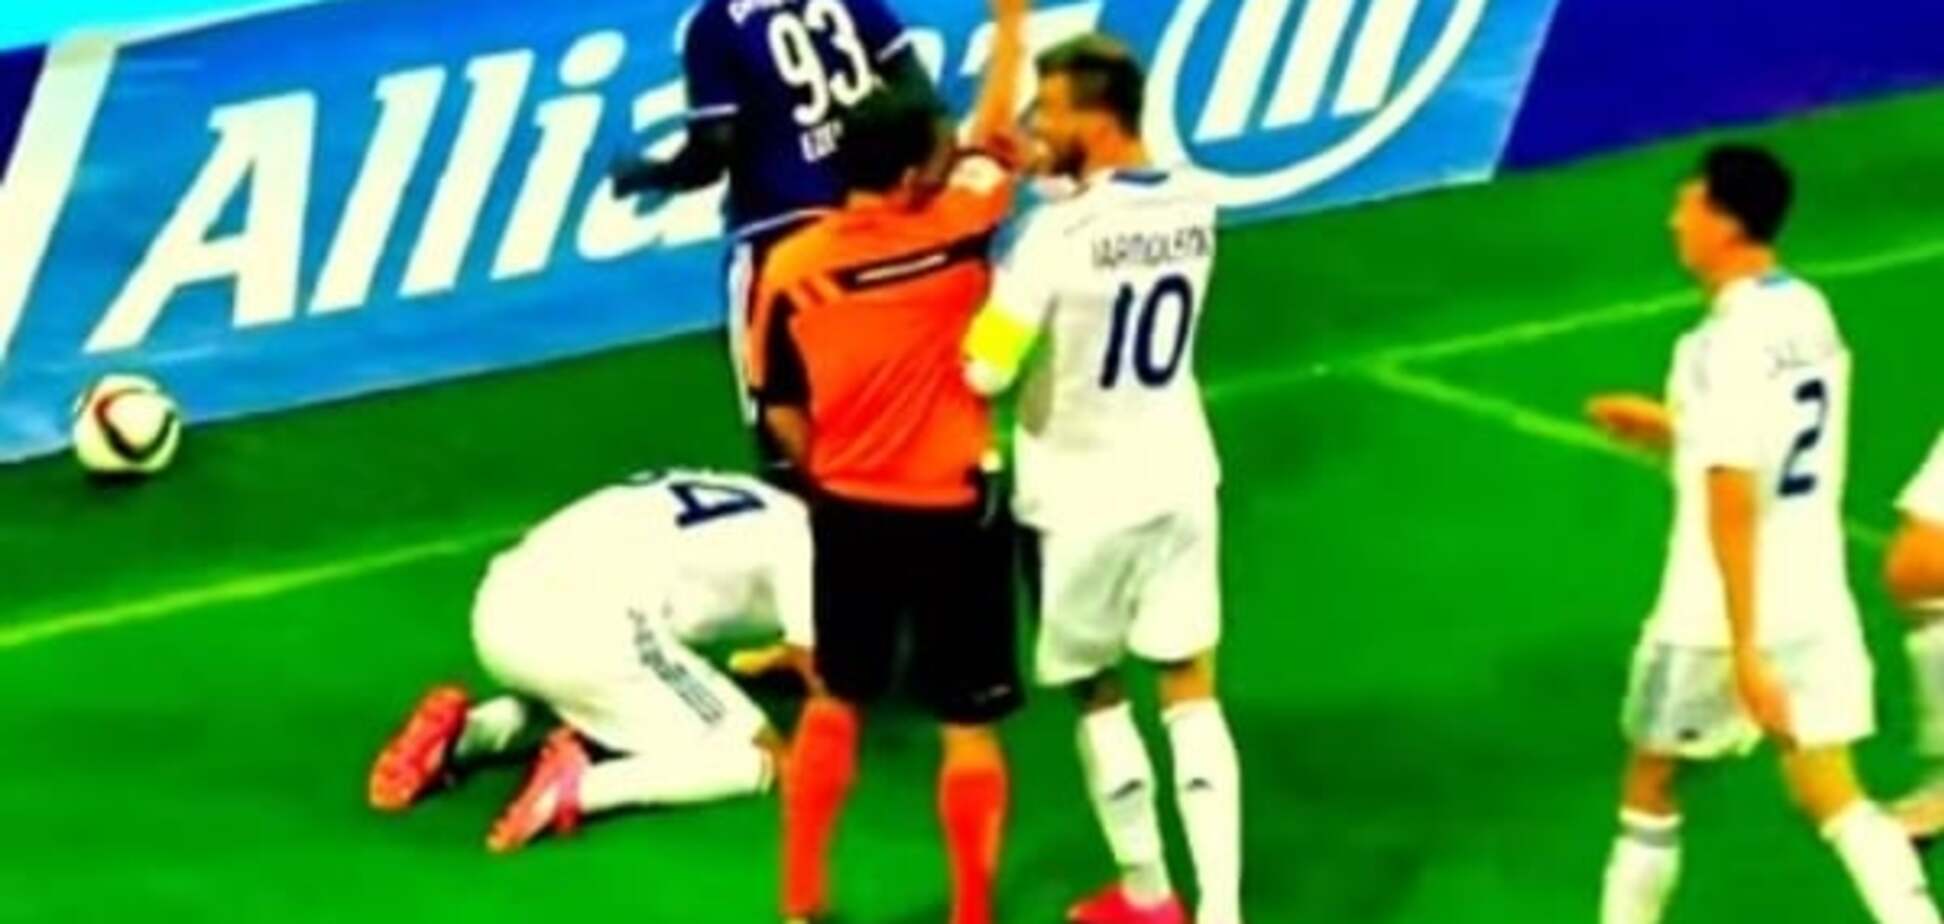 Ярмоленко агрессивно набросился на судью во время матча: видео инцидента